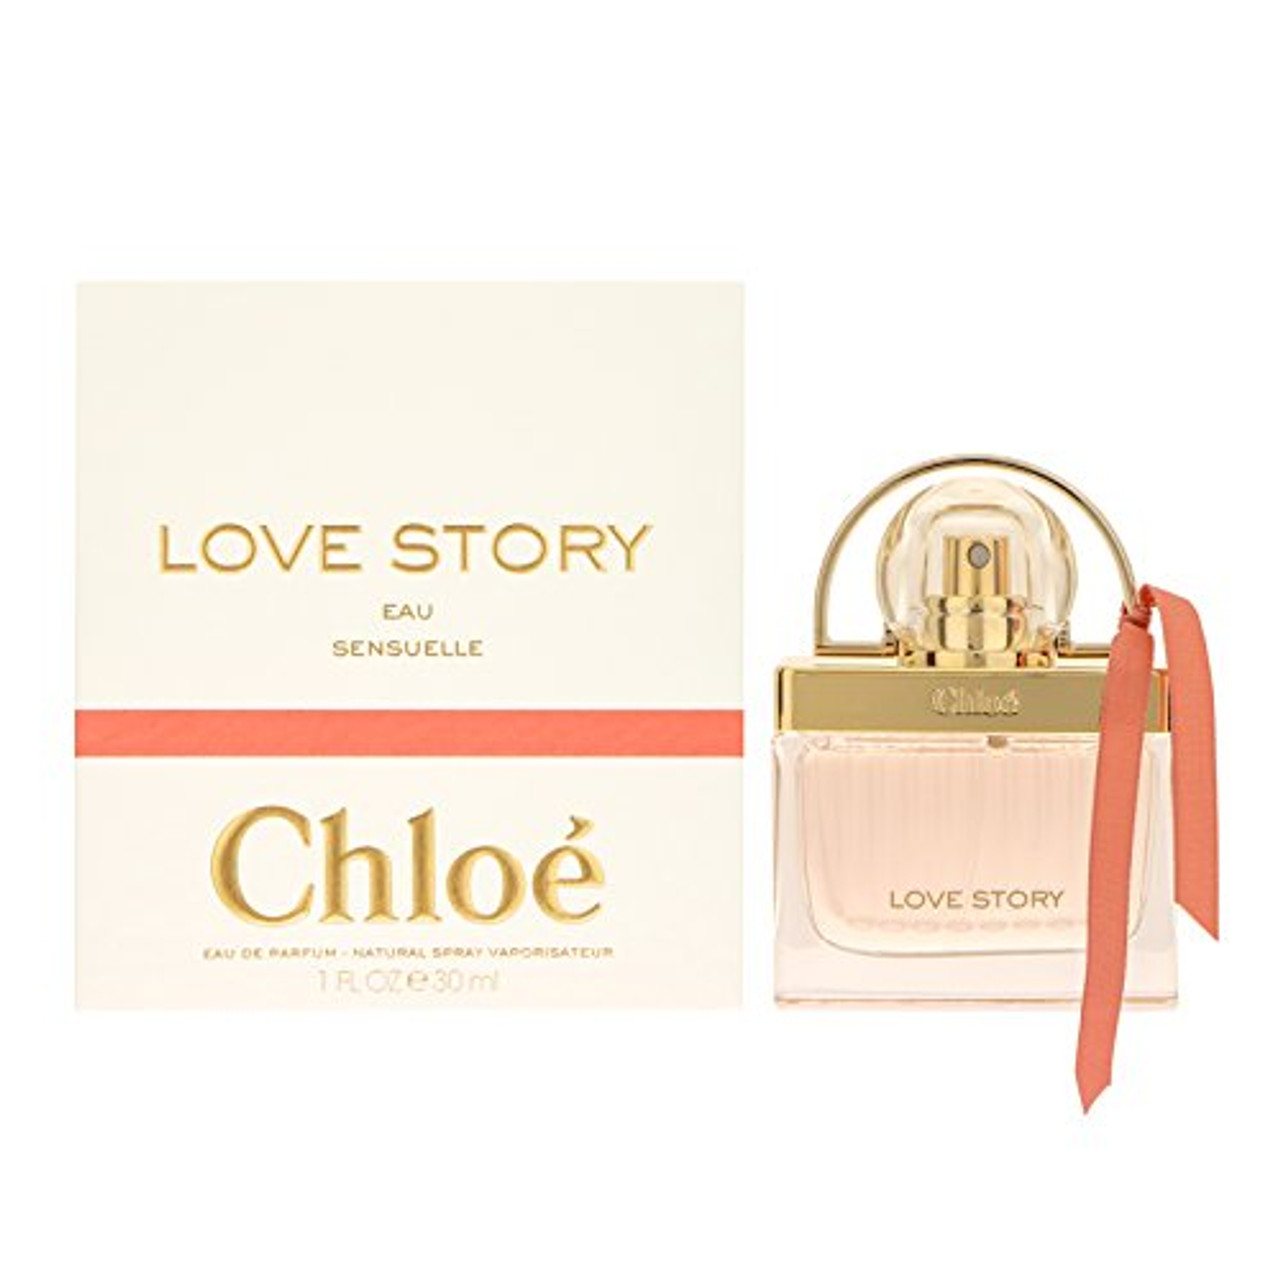 Chloé Love Story Eau sensuelle Parfum De Eau 30ml